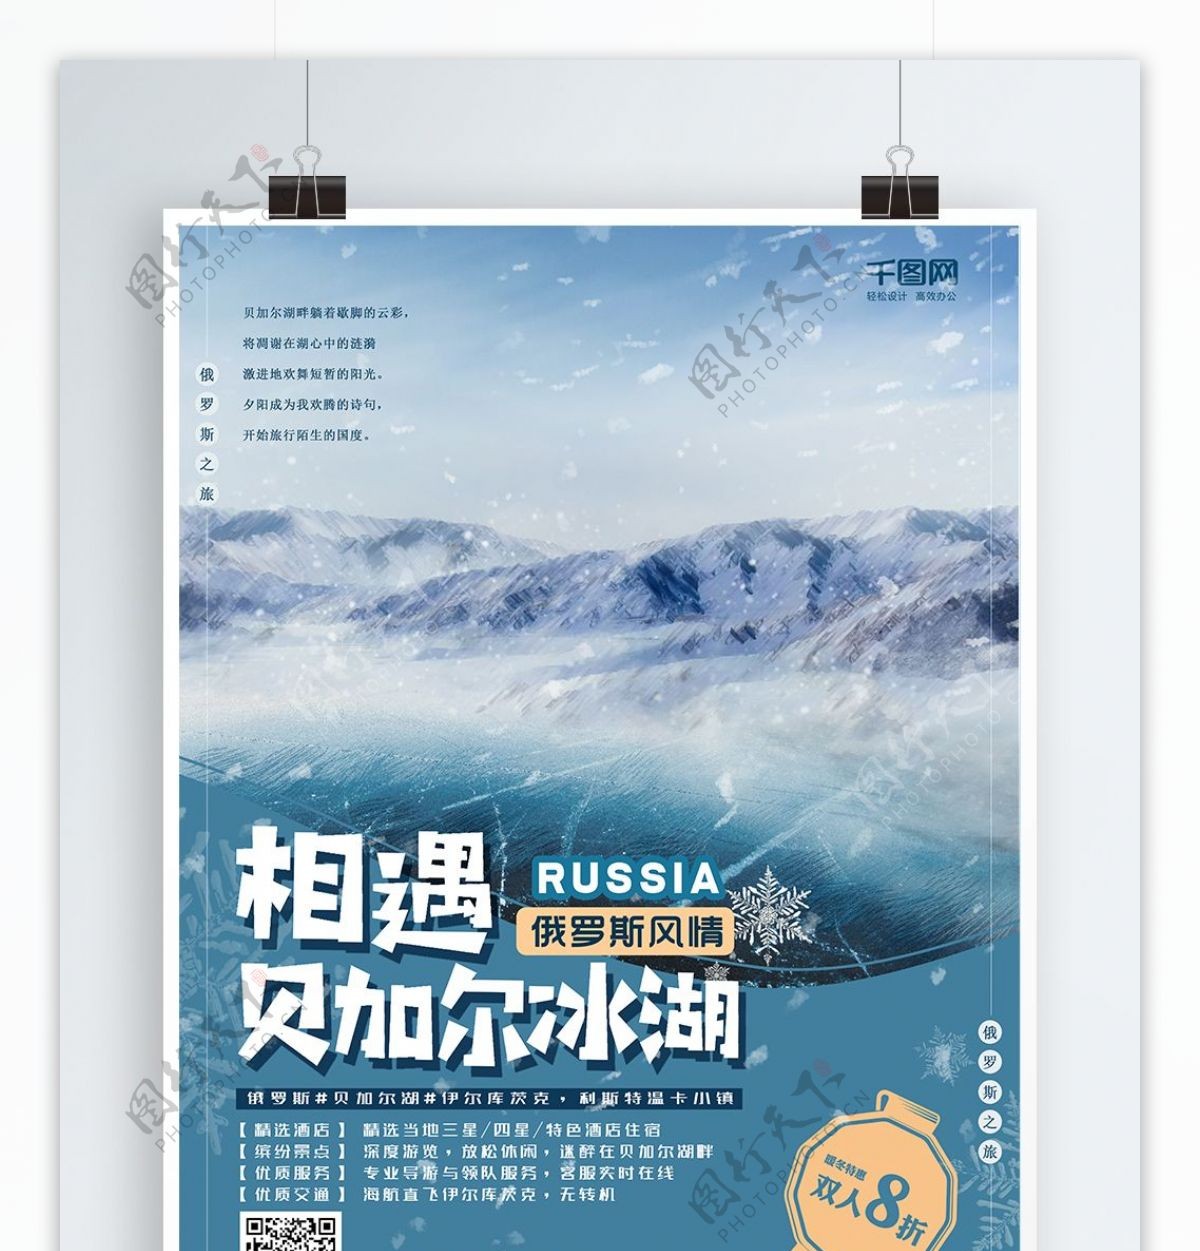 俄罗斯旅游海报贝加尔湖冬季雪景蓝色